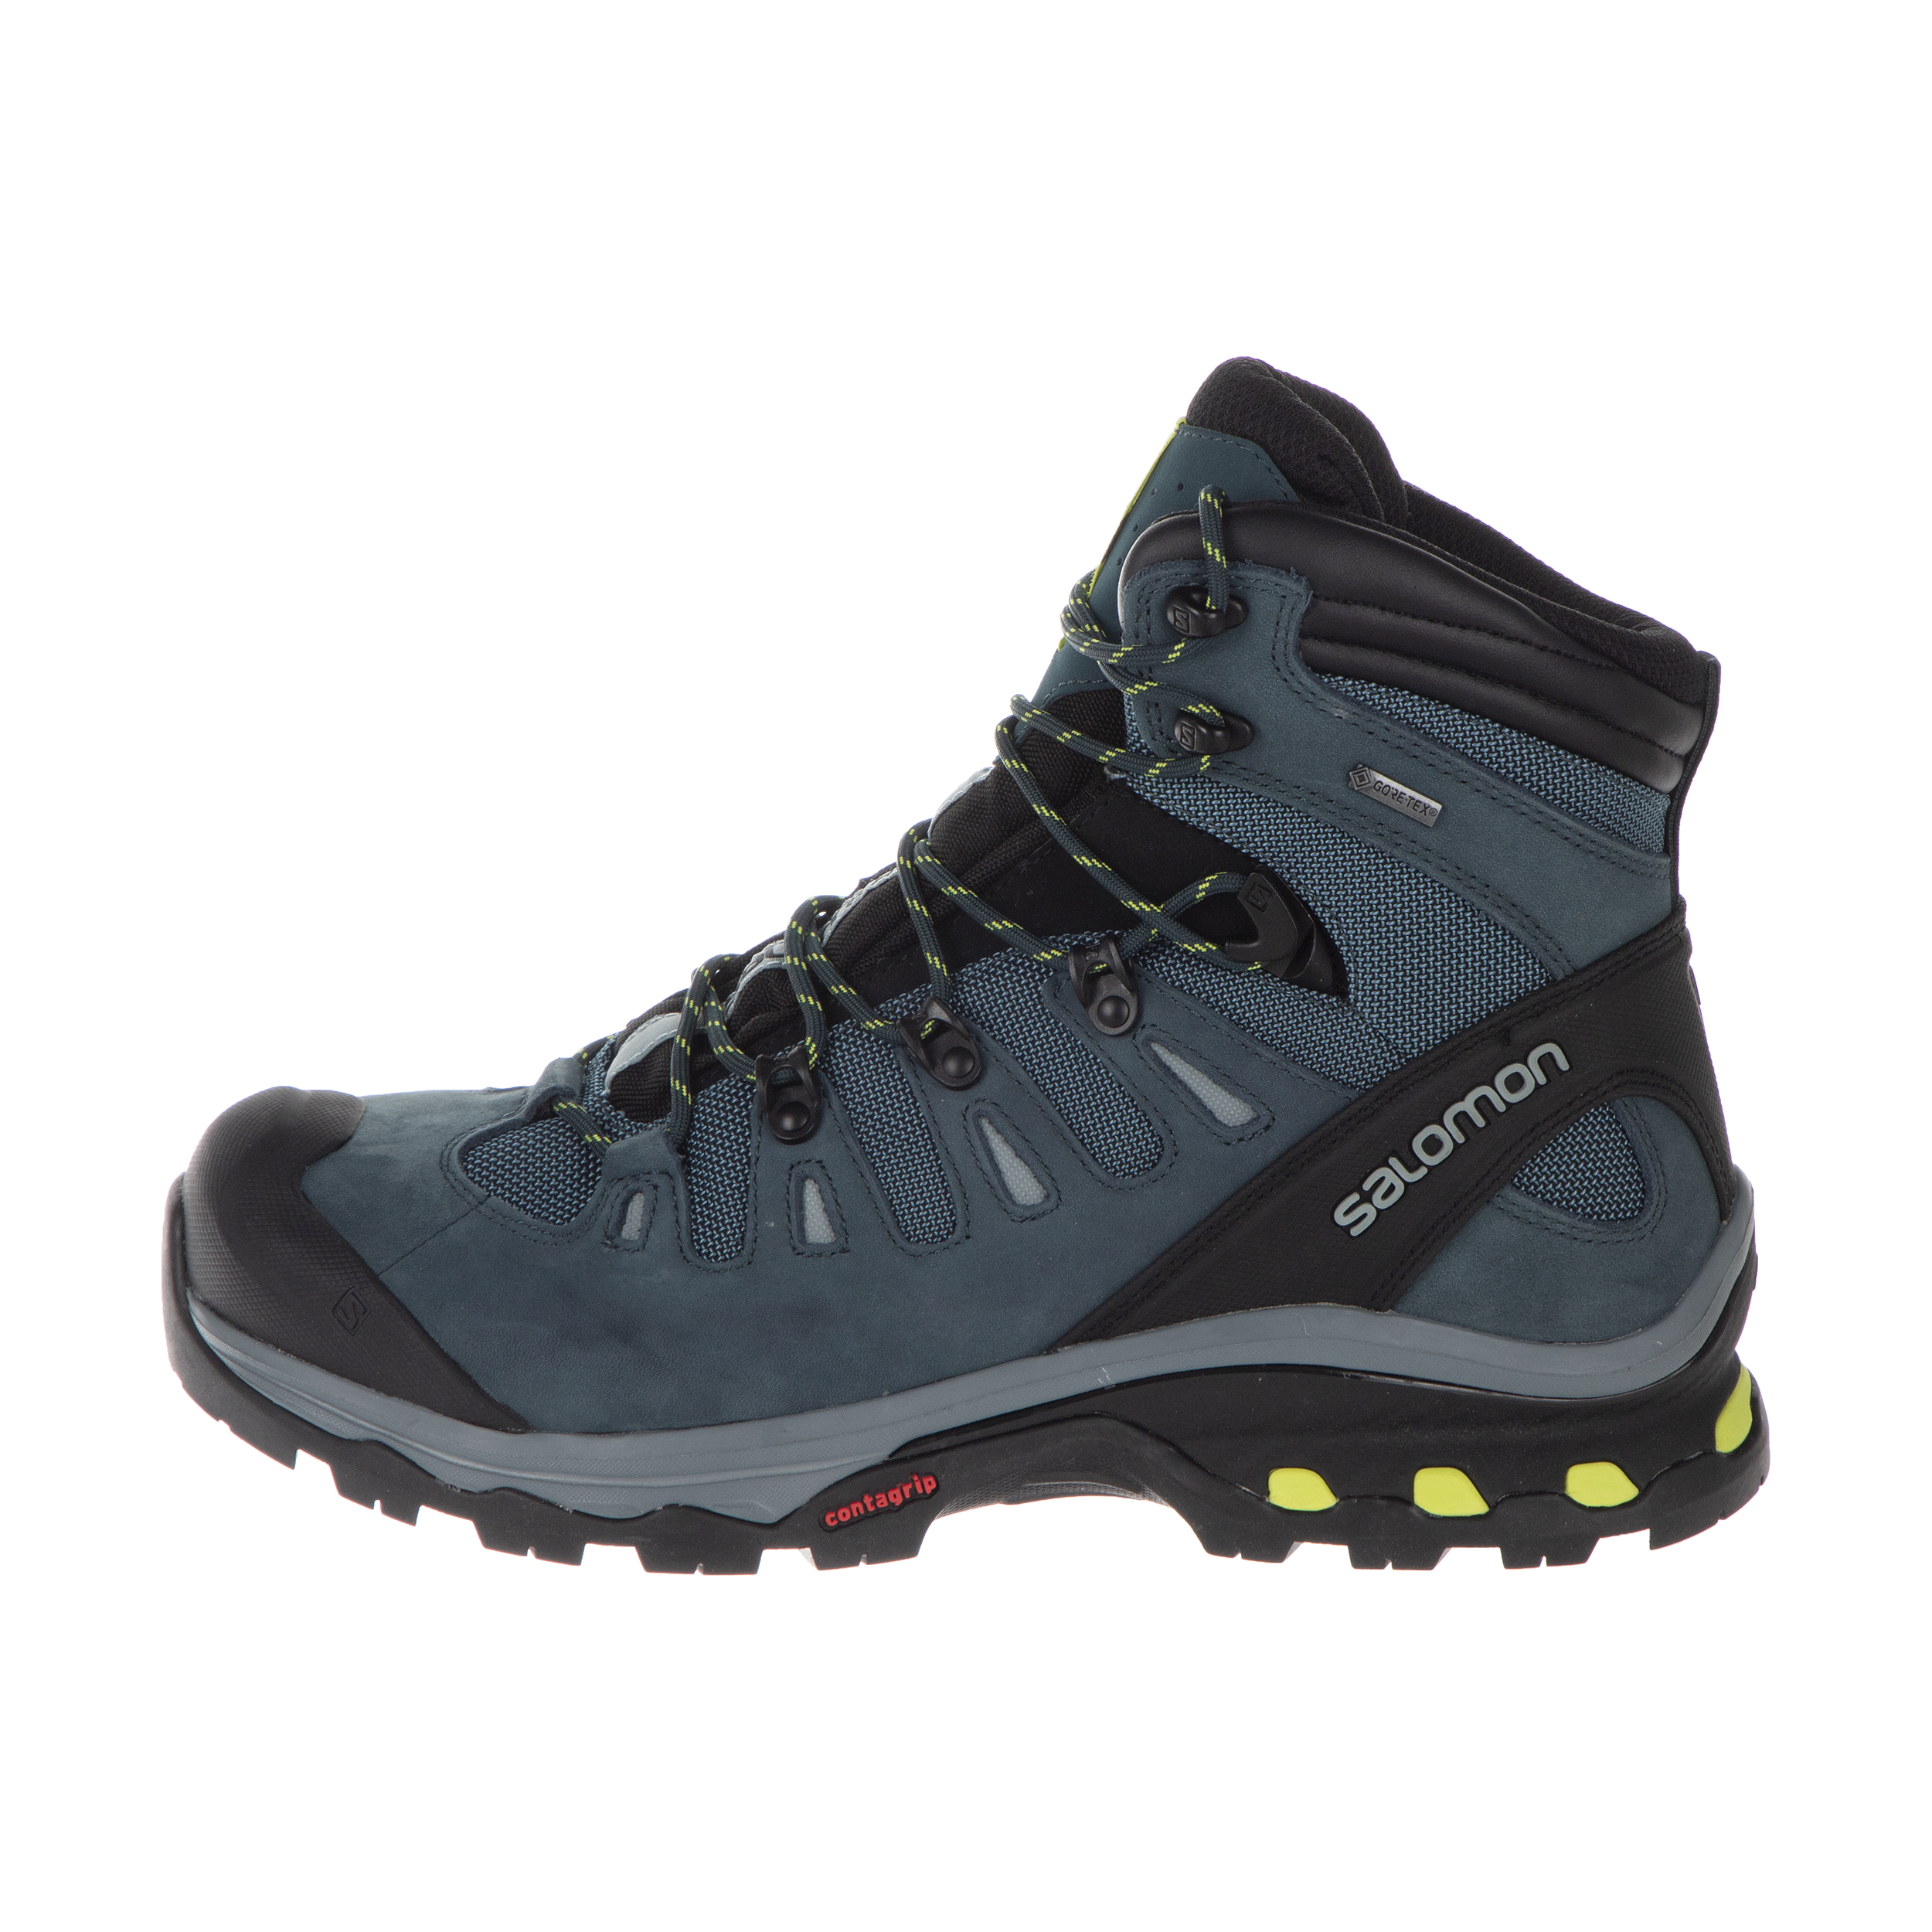 کفش کوهنوردی مردانه سالومون مدل Xultra Winteres کد EM-208